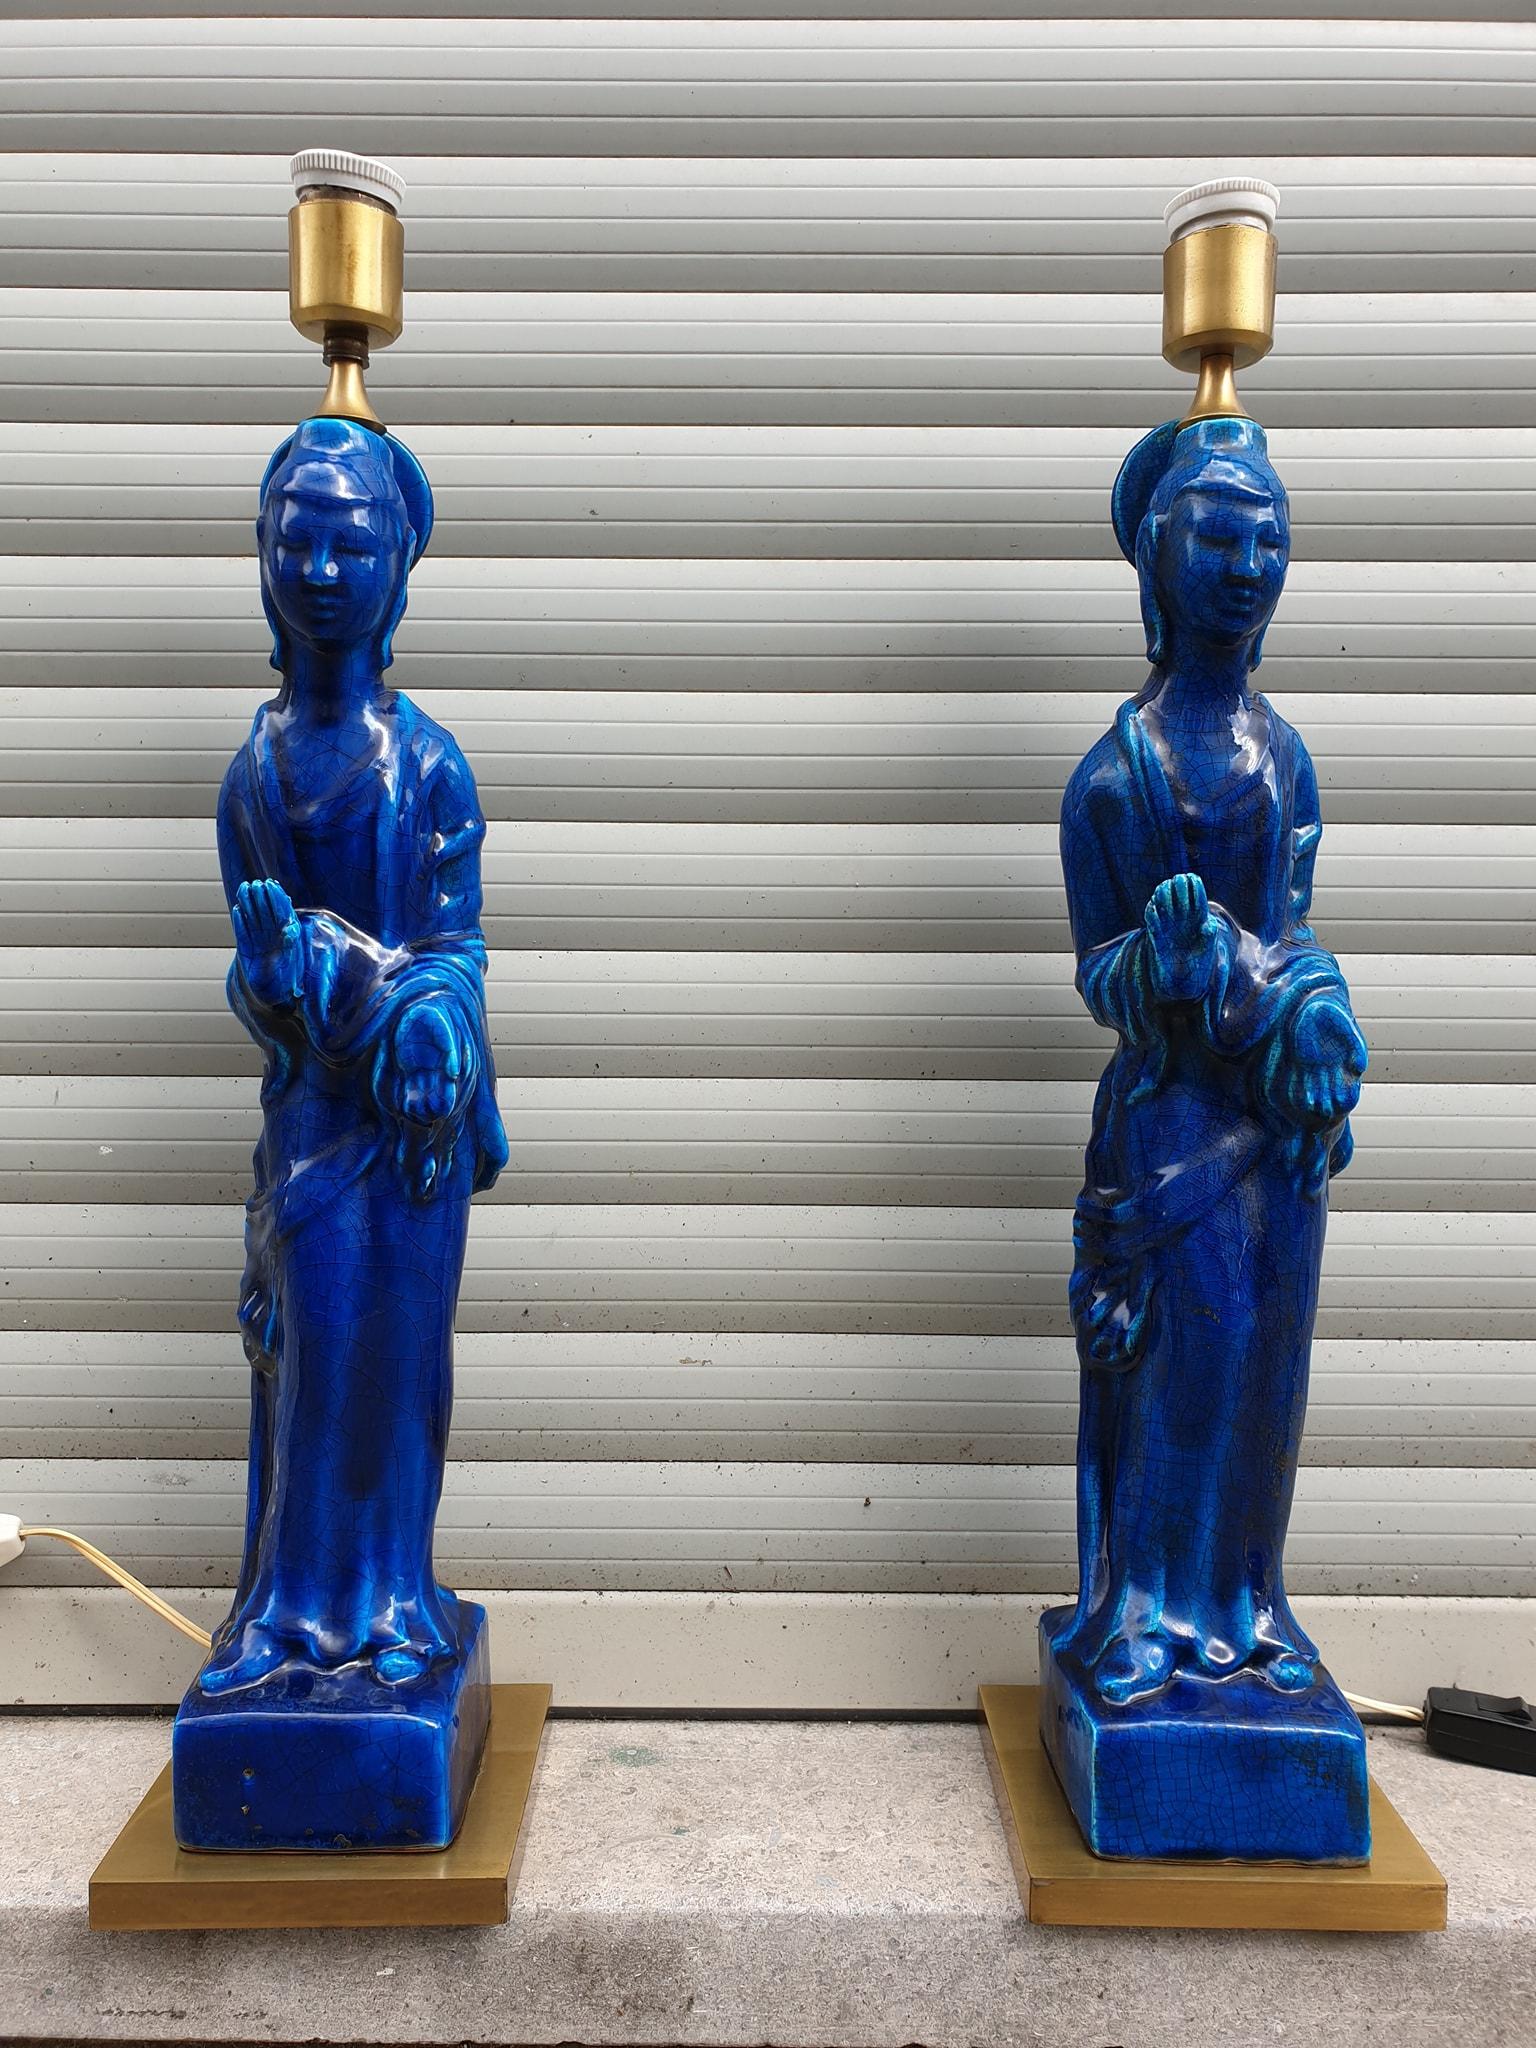 Étonnante paire de lampes Bouddha chinoises en laiton doré et céramique bleue, circa 1950 par le designer Ugo Zaccagnini. Fabriquées en Italie.
Belle paire unique de lampes assorties.
Mesures : Hauteur avec abat-jour 90 cm,
Diamètre de